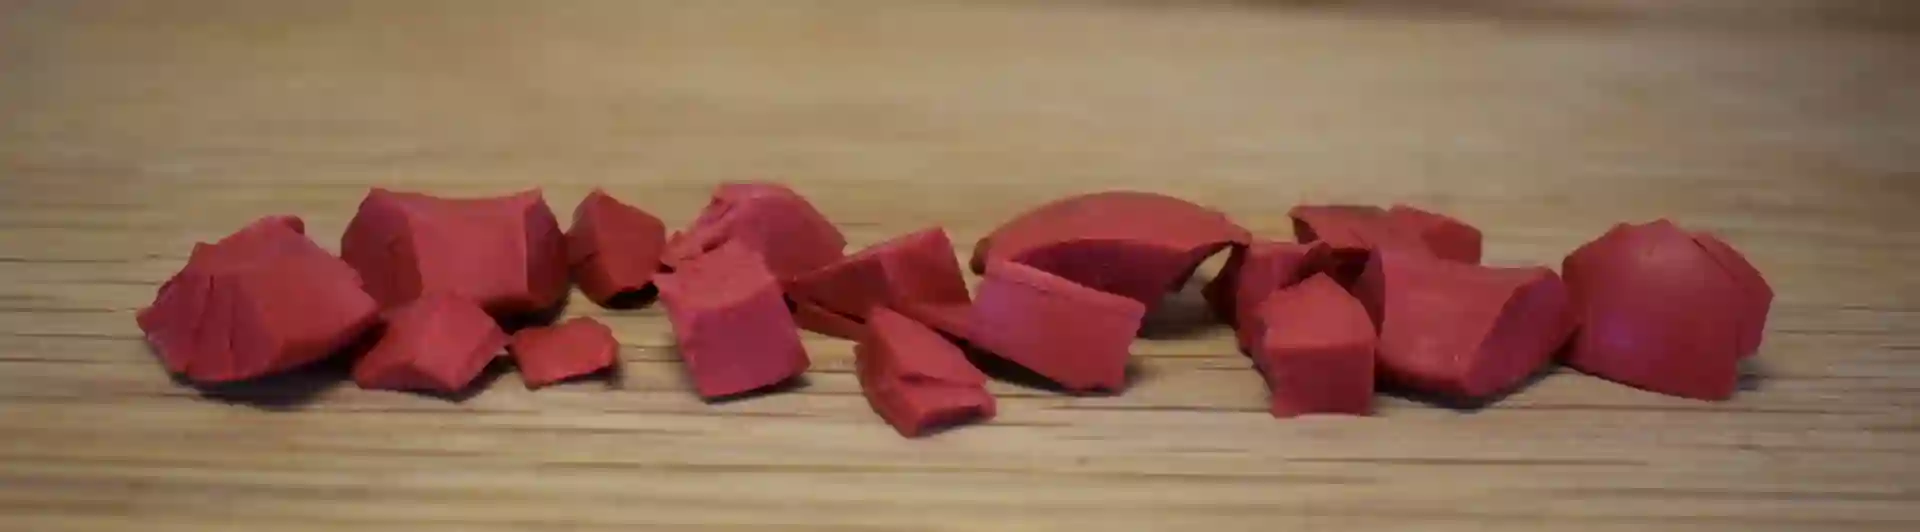 Små bitar av röd kong som används vid specialsök.